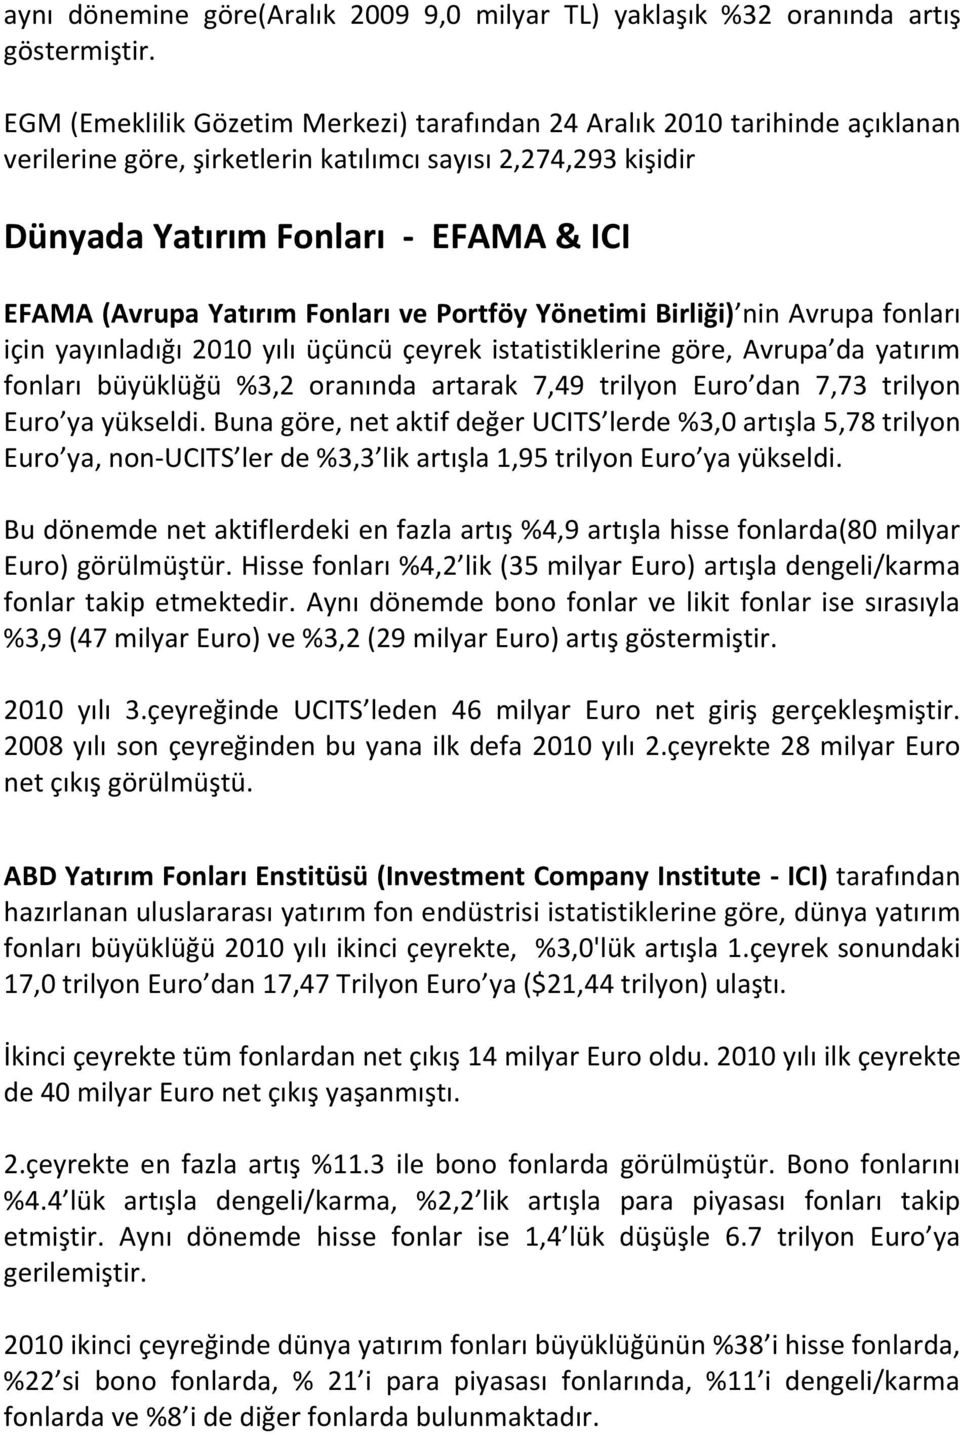 Yatırım Fonları ve Portföy Yönetimi Birliği) nin Avrupa fonları için yayınladığı 2010 yılı üçüncü çeyrek istatistiklerine göre, Avrupa da yatırım fonları büyüklüğü %3,2 oranında artarak 7,49 trilyon